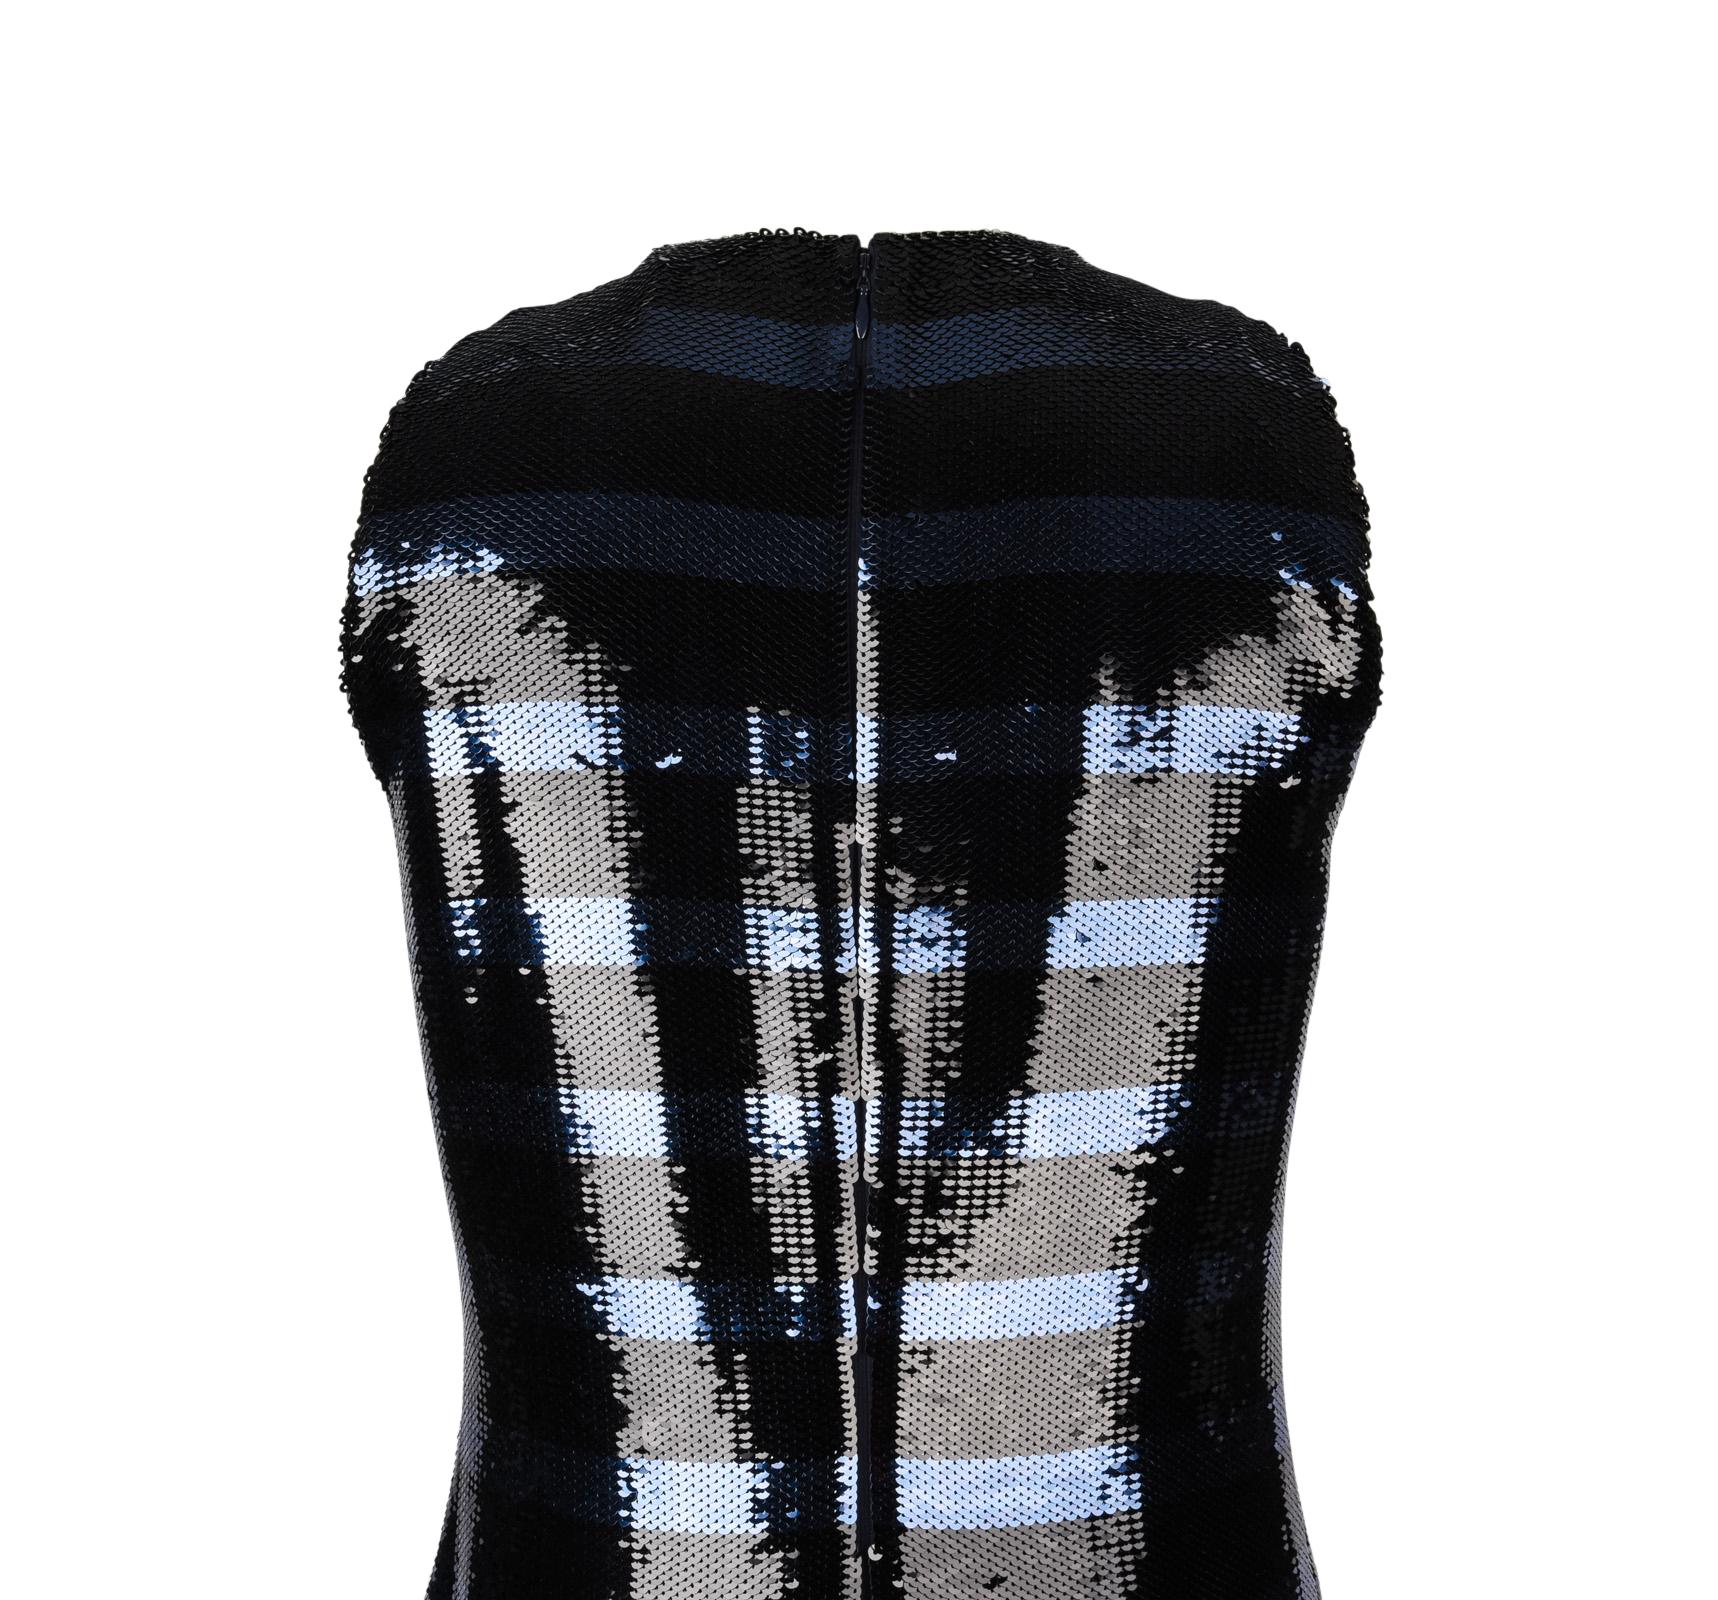 Christian Dior Dress Striped Sequin Embellished Navy / Black 6 4